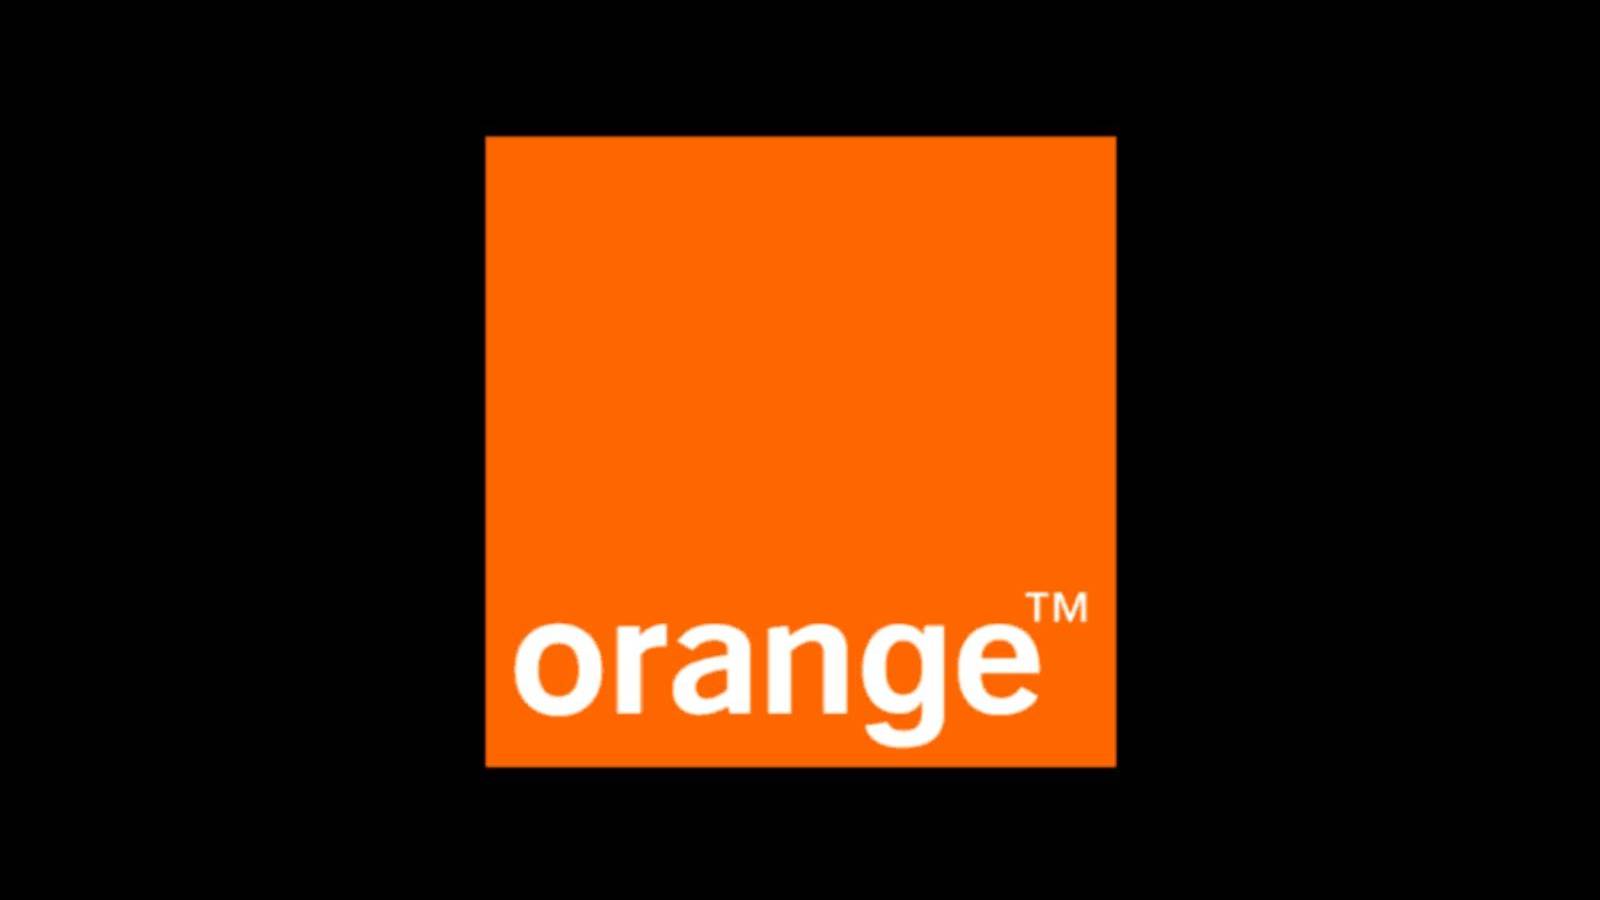 Orange sorprende a los clientes GRATIS Cómo puede obtener ganancias incluyendo ahora